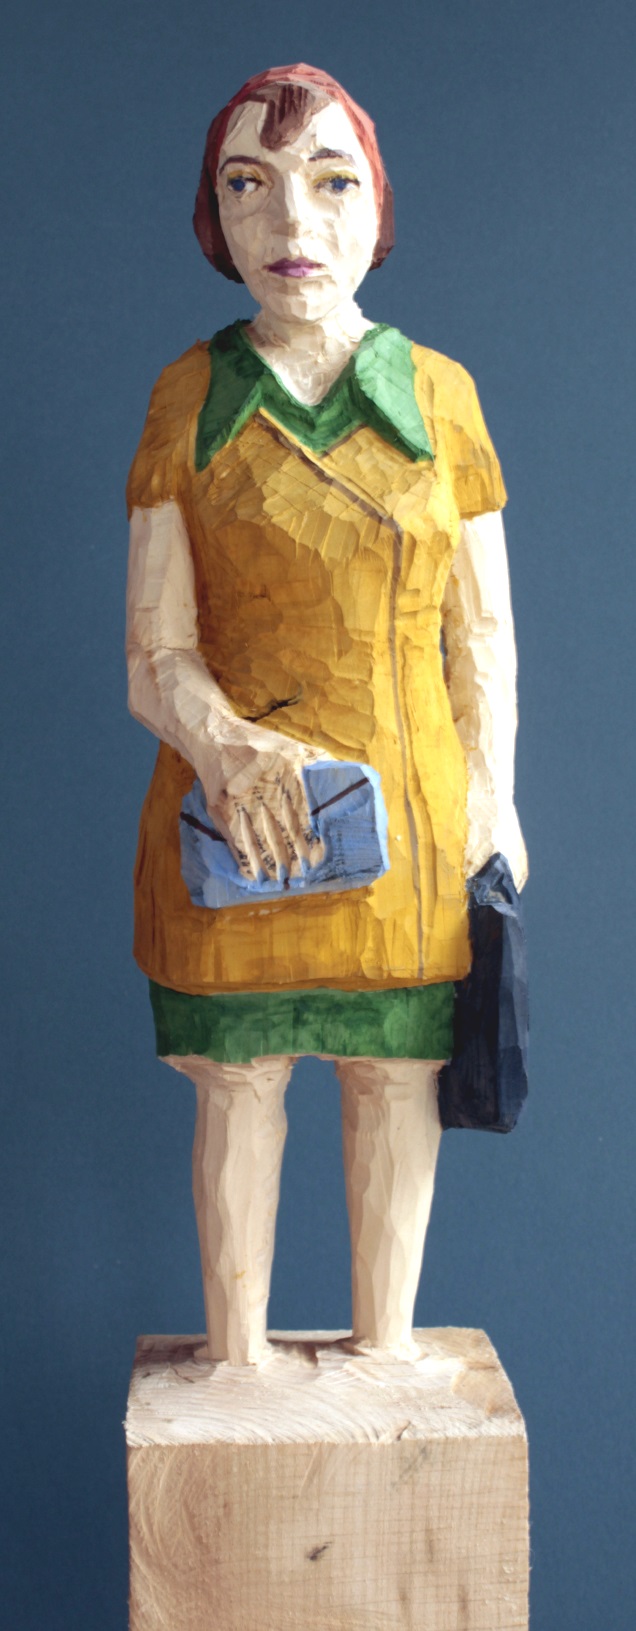 Edekafrau (934) mit blauer Brieftasche